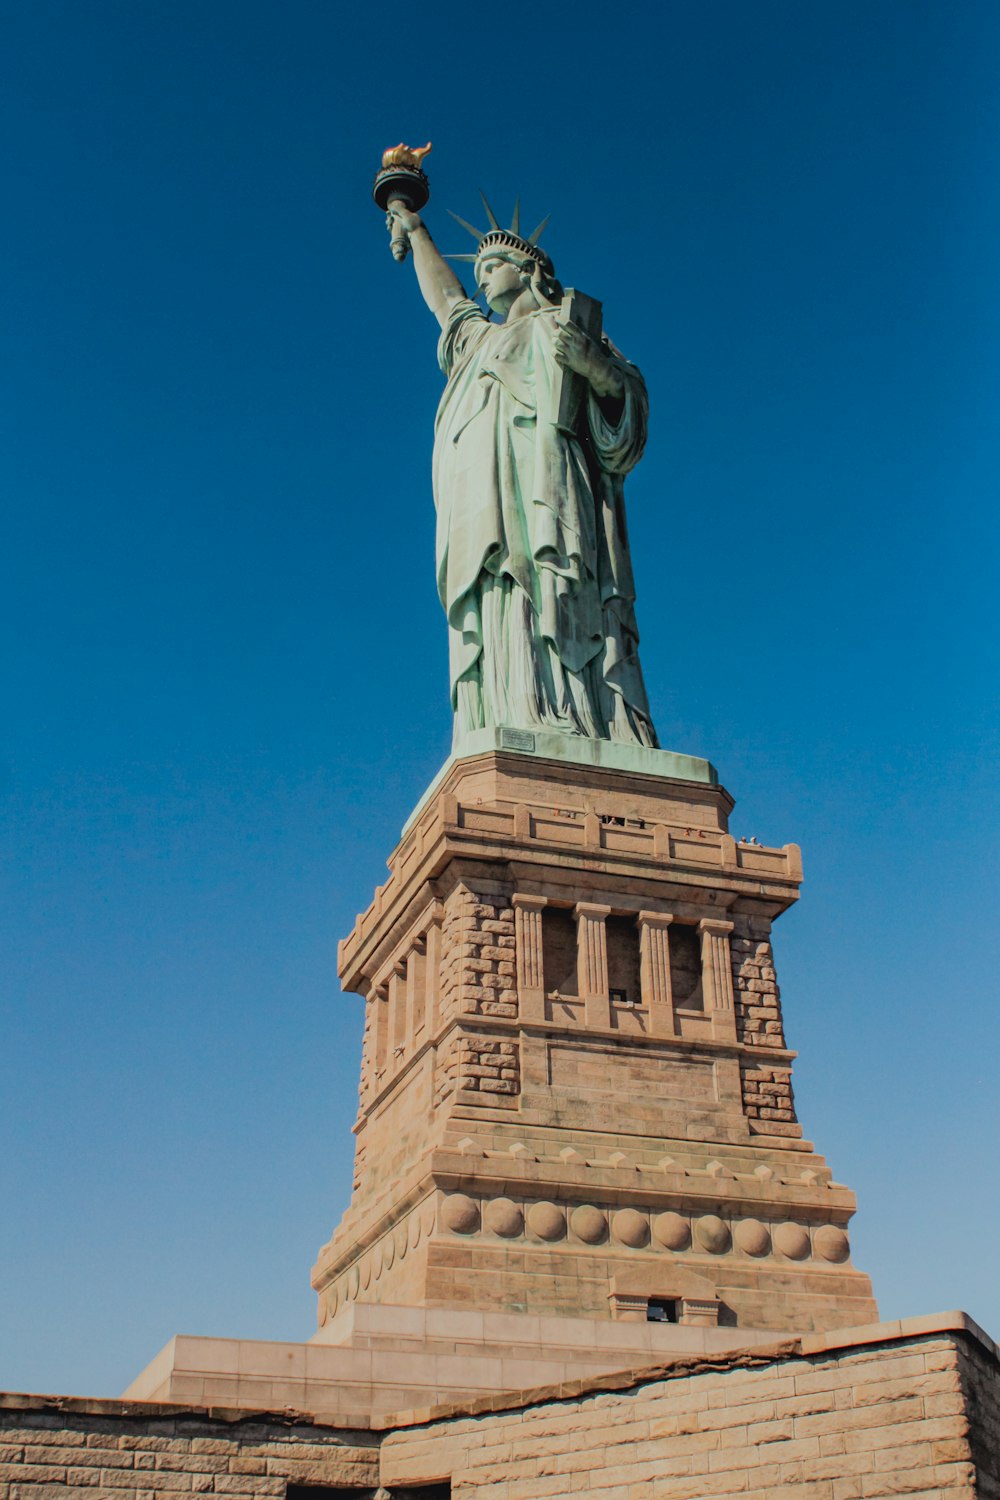 a estátua da liberdade ergue-se alta contra um céu azul